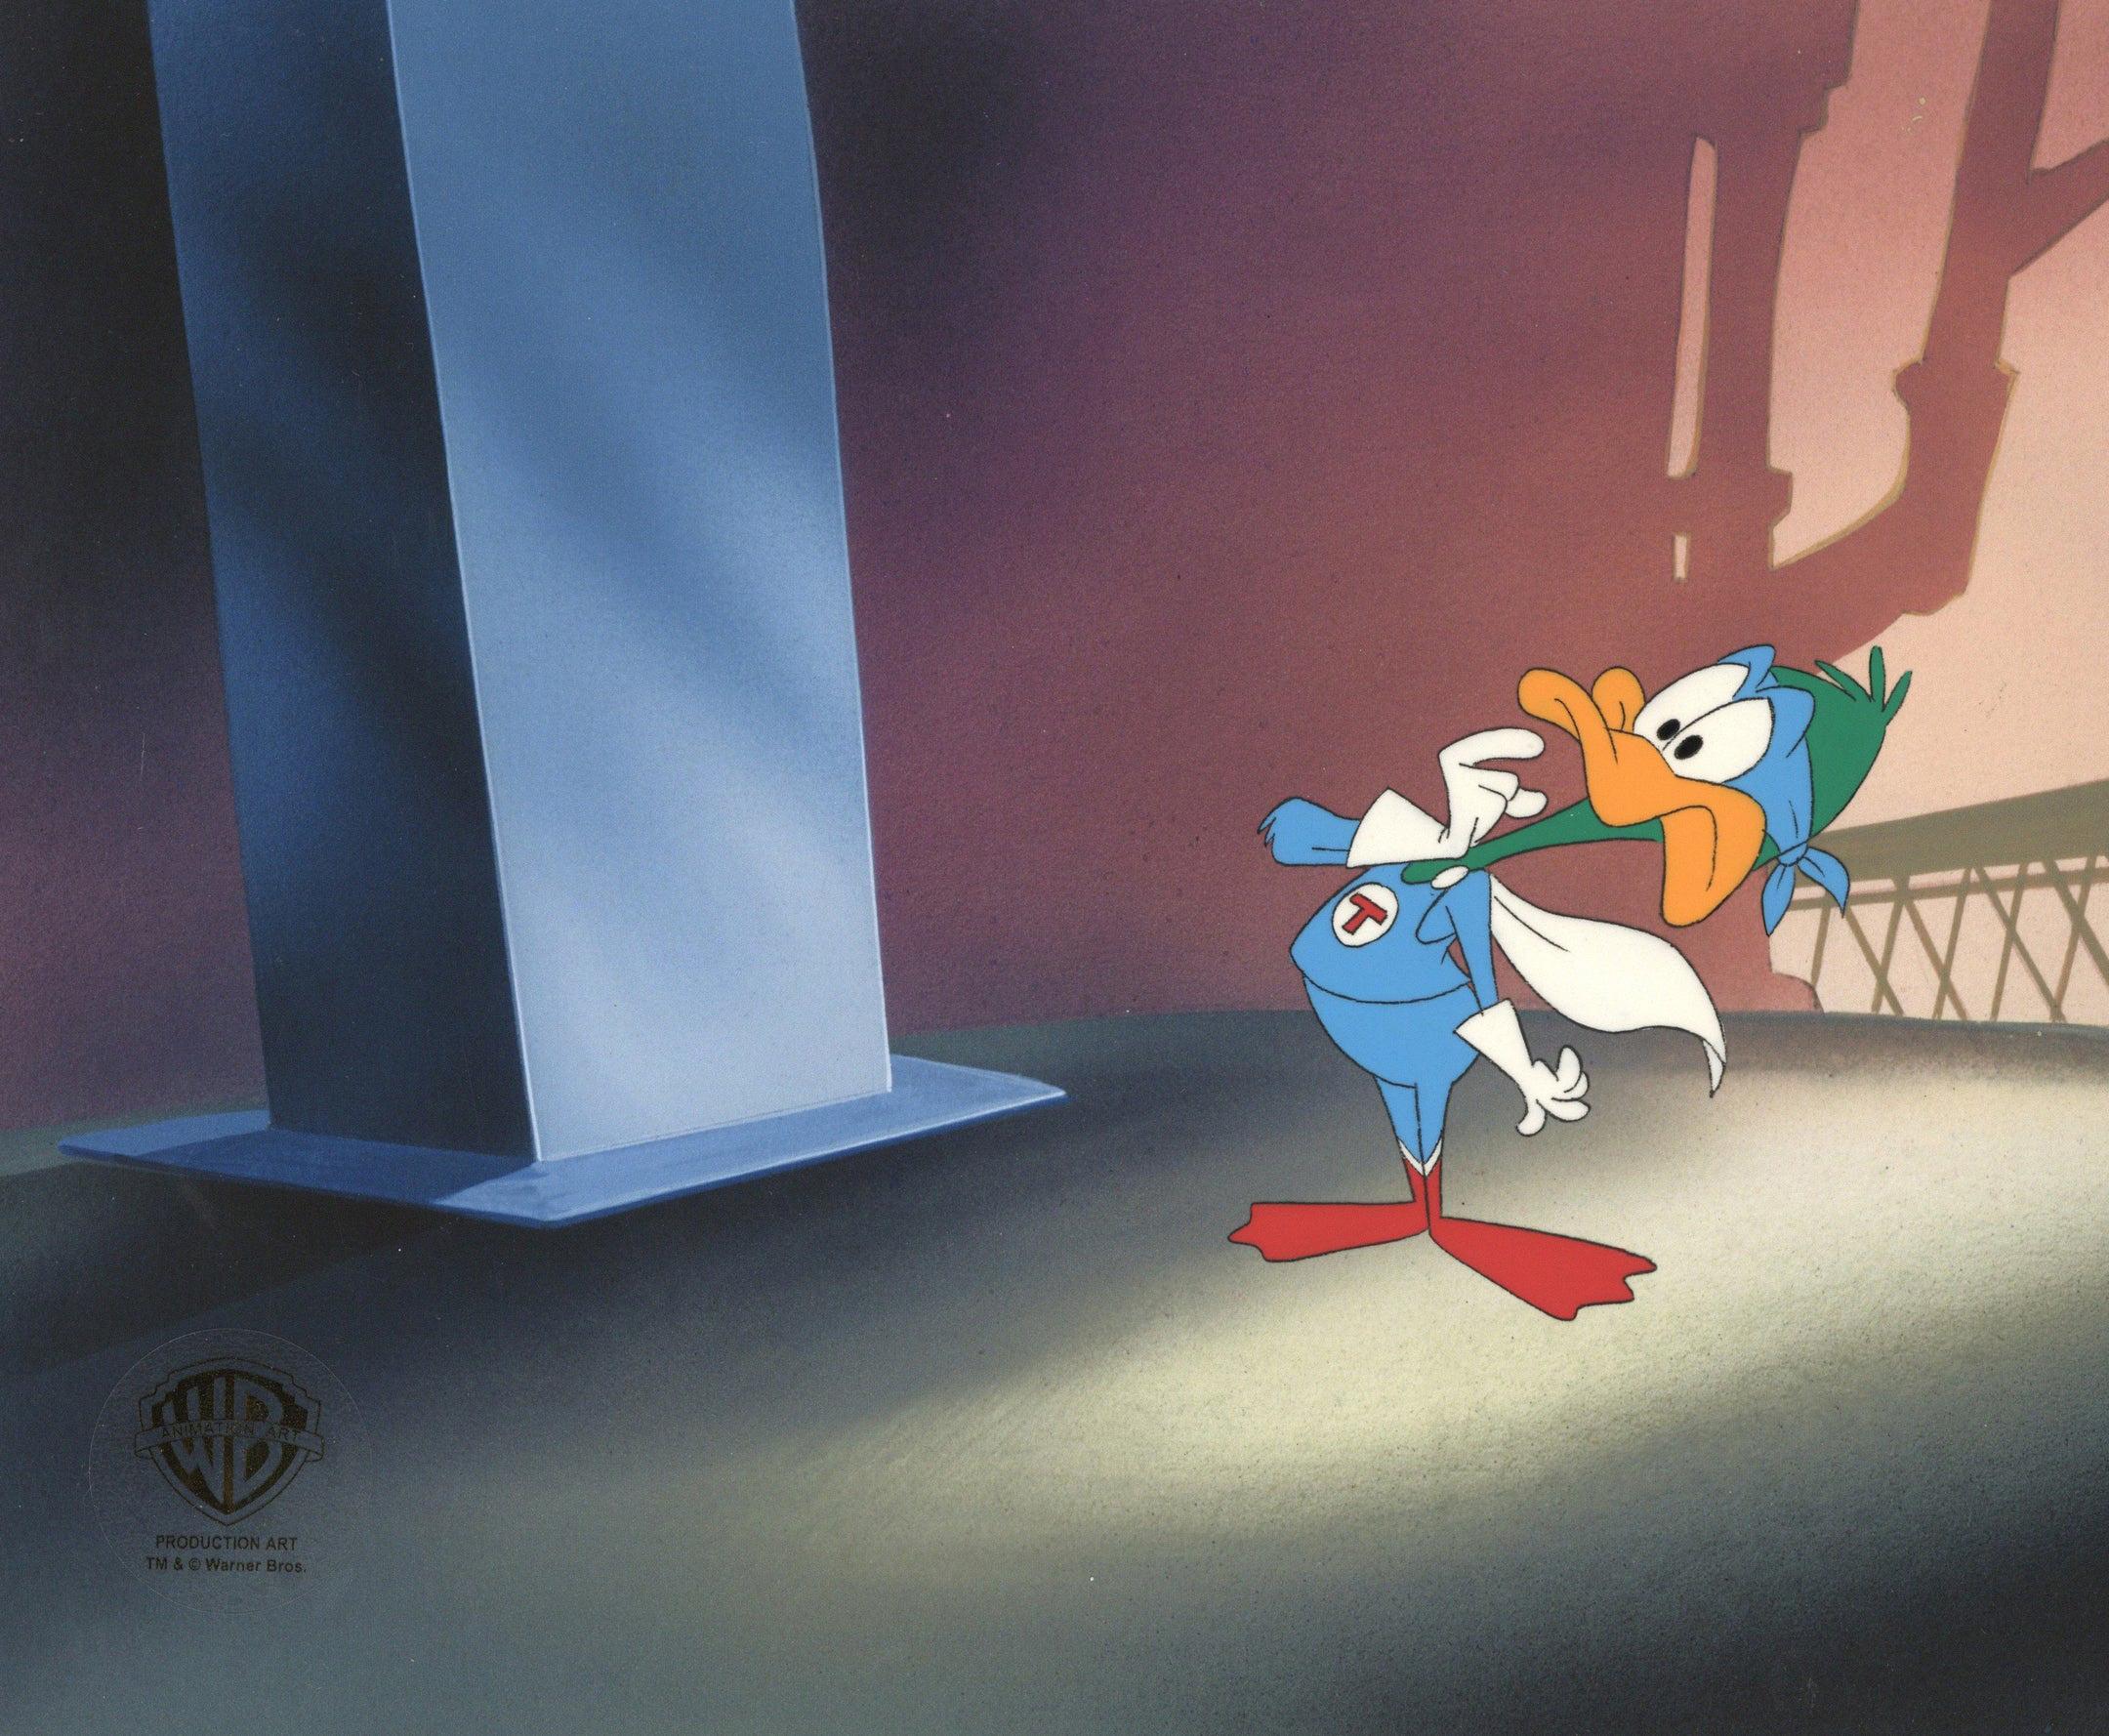 Tiny Toons Adventures Original Production Cel: Plucky Duck - Art by Warner Bros. Studio Artists